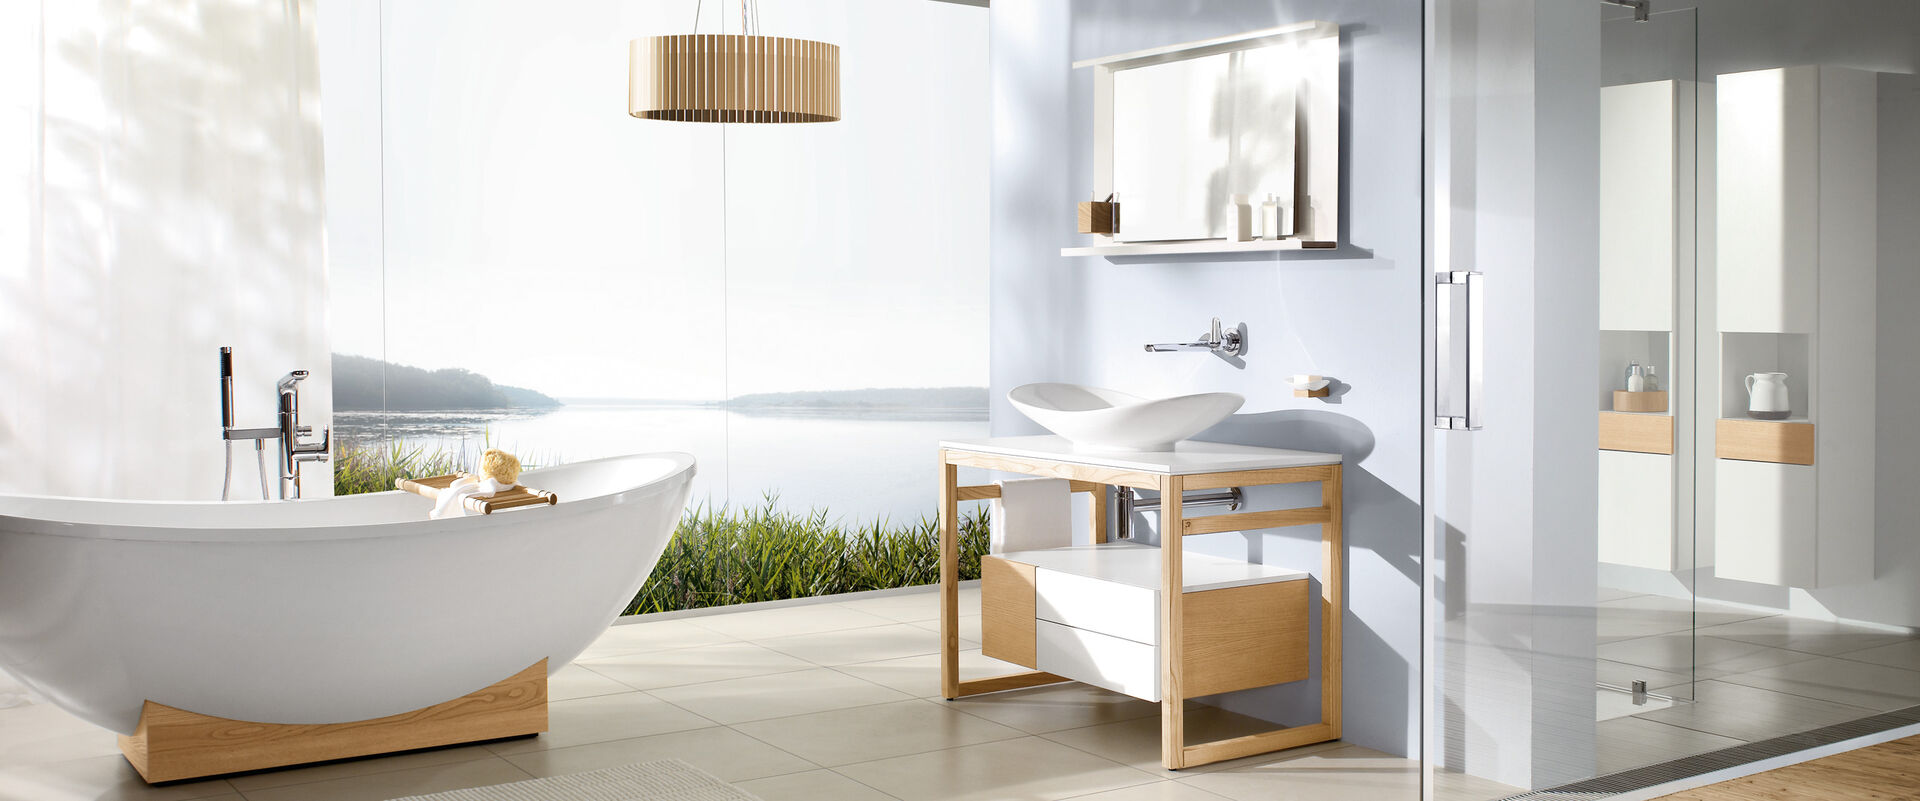 Modernes Bad mit Badmöbeln aus Holz und weiß. Badewanne auf Holzsockel freistehend. Blick nach draussen.